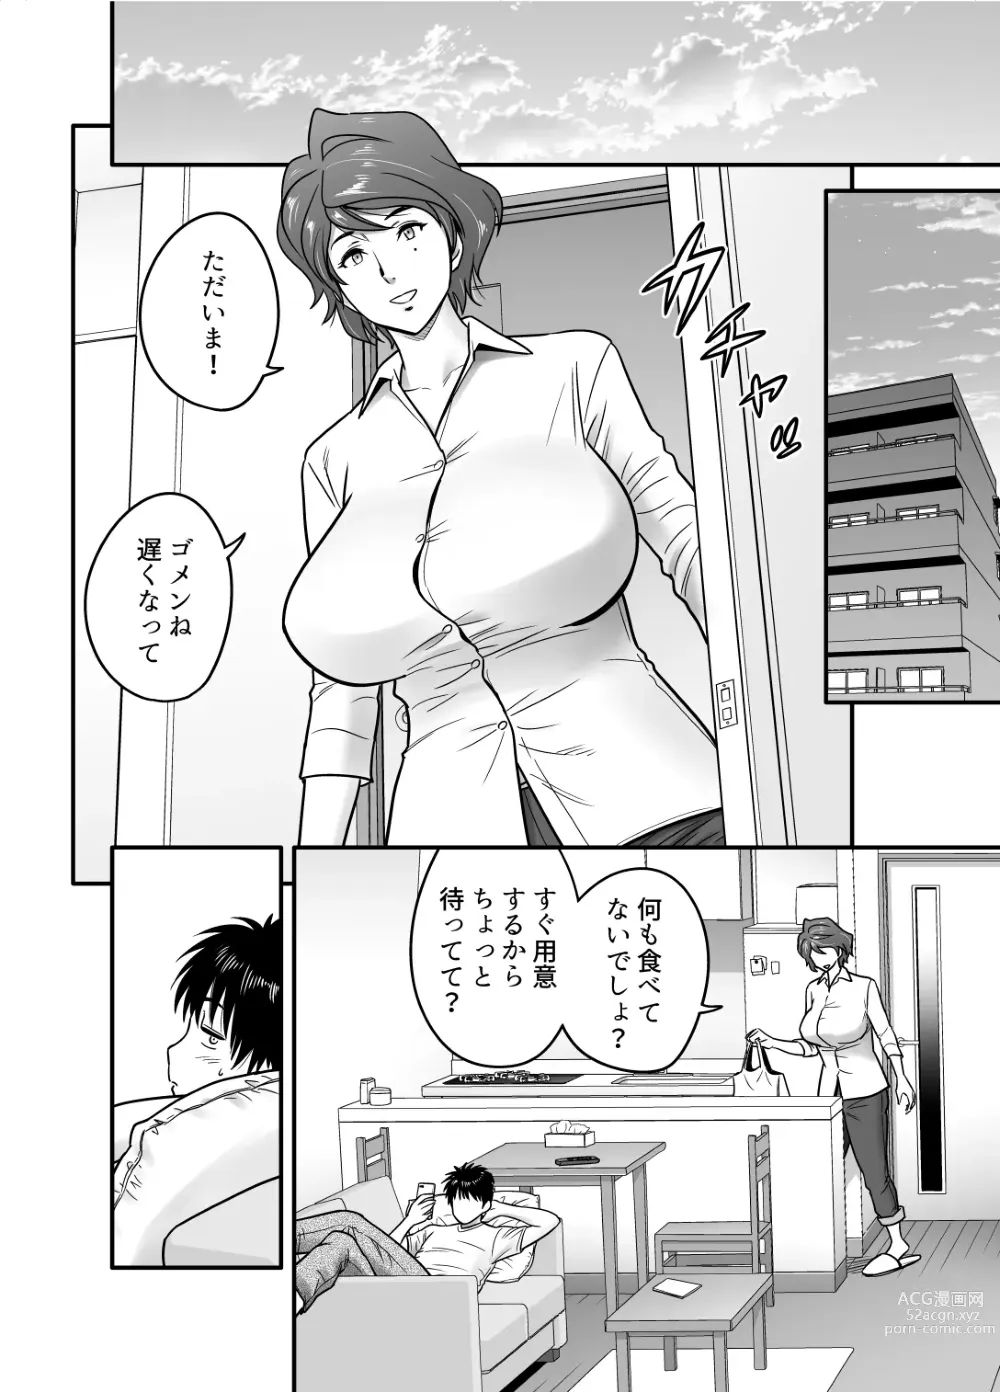 Page 6 of doujinshi Haha ga TomoKano ni Natta node